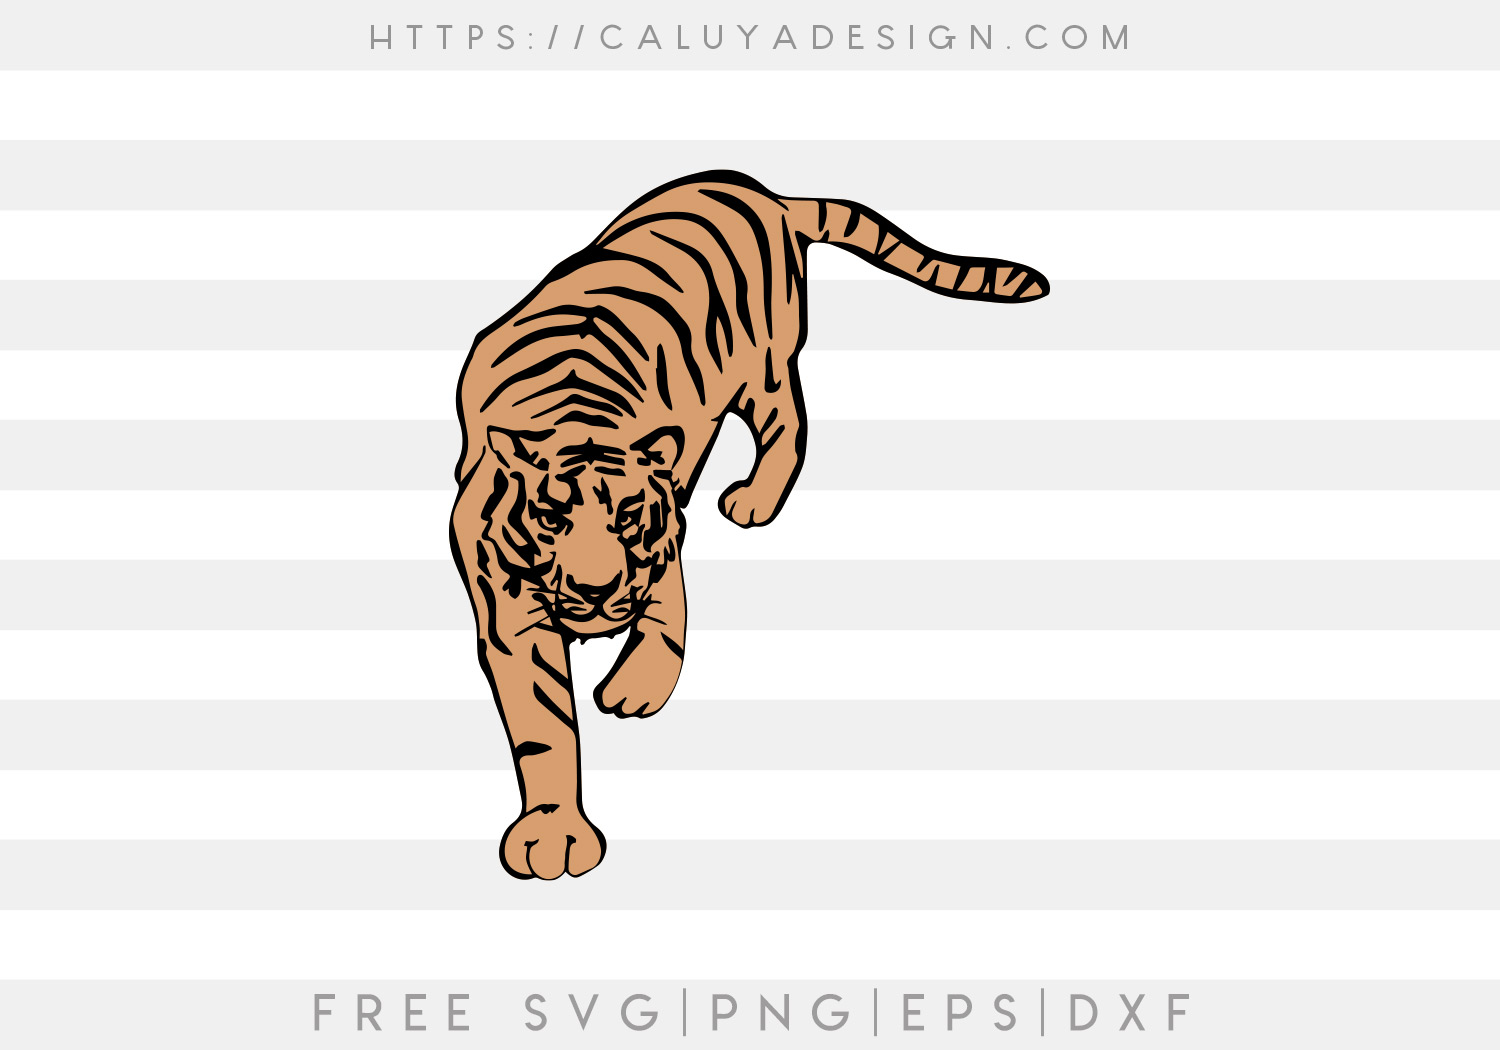 Free Vintage Tiger SVG